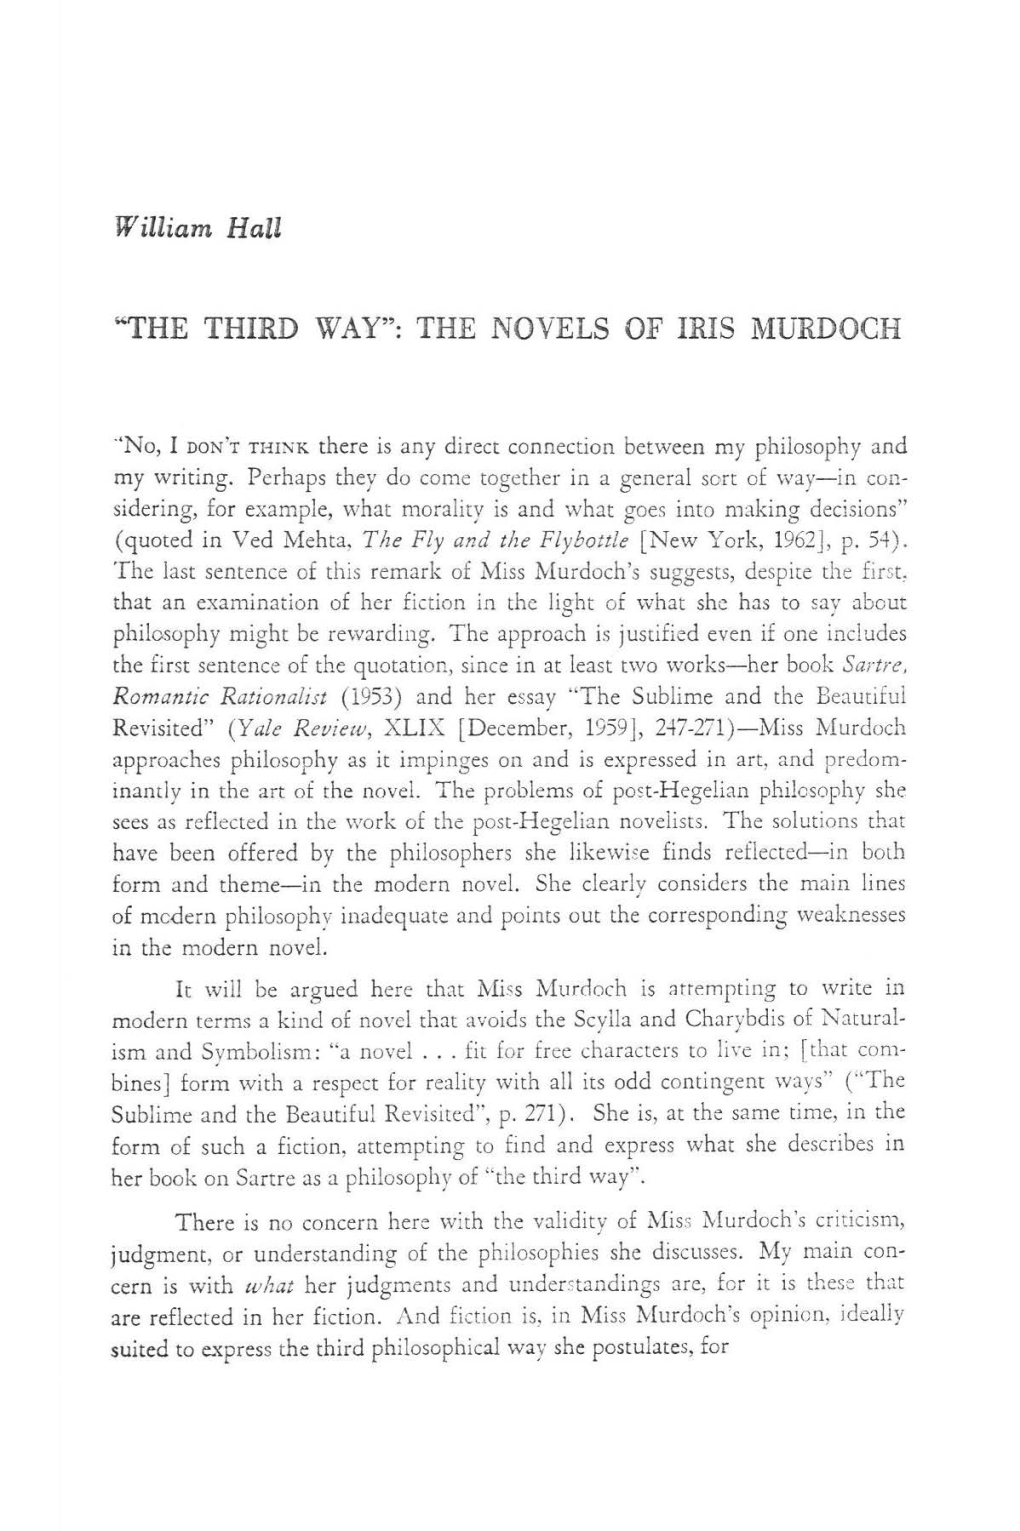 The Novels of Iris Murdoch